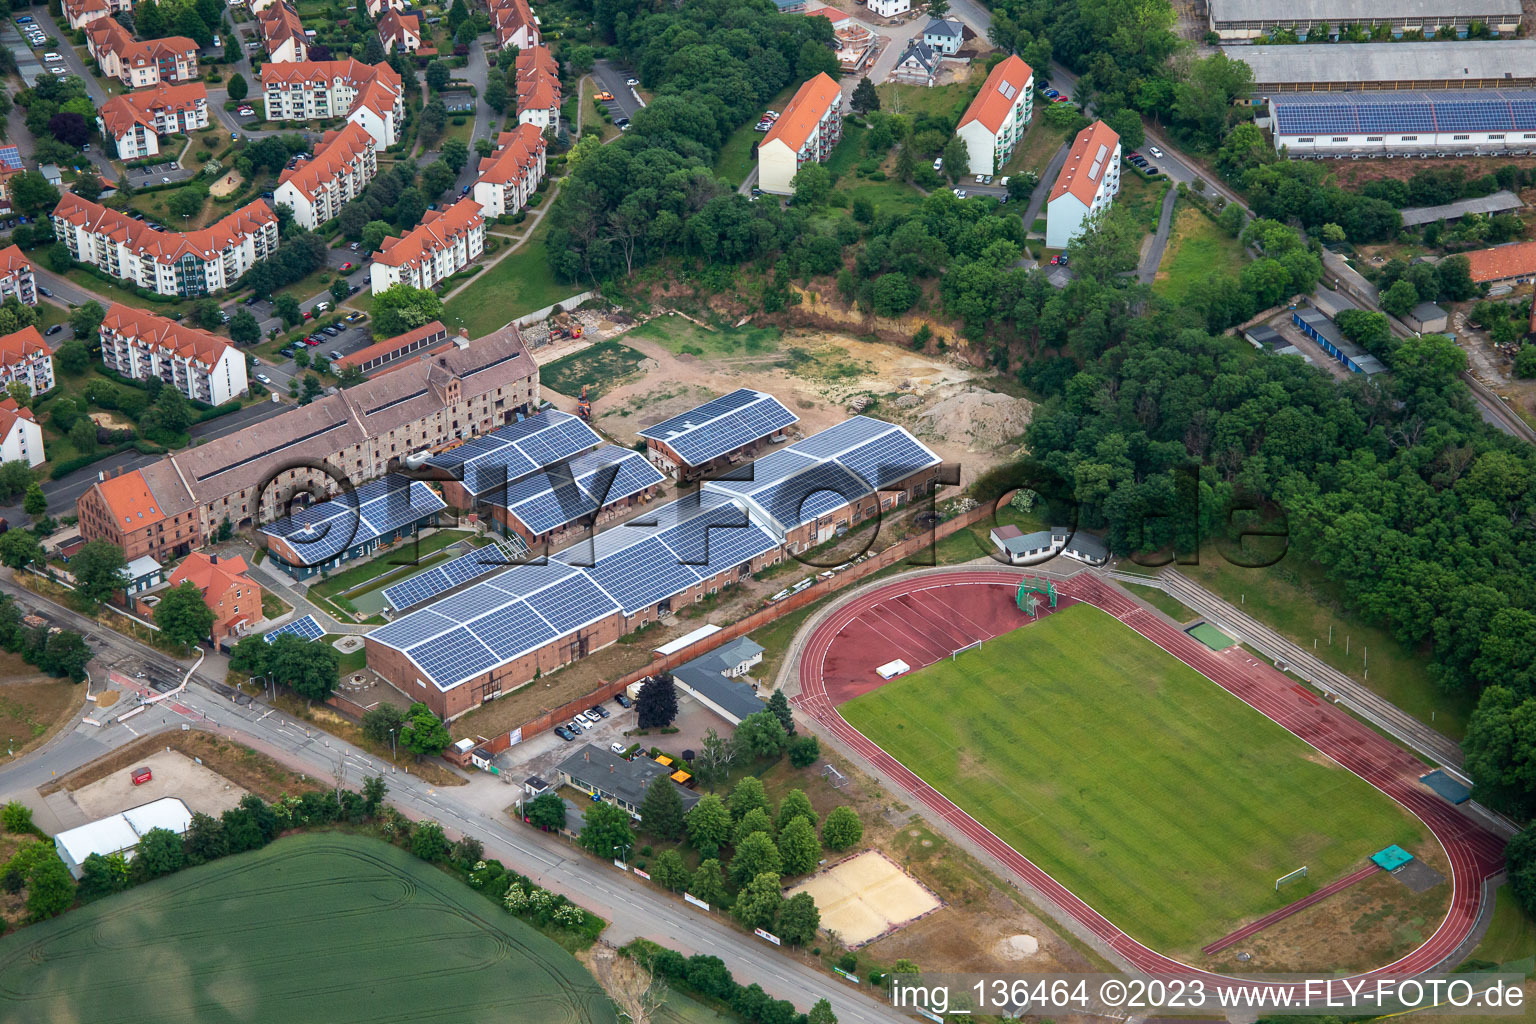 Sportplatz am Moorberg und Wolff Energy Group in Quedlinburg im Bundesland Sachsen-Anhalt, Deutschland